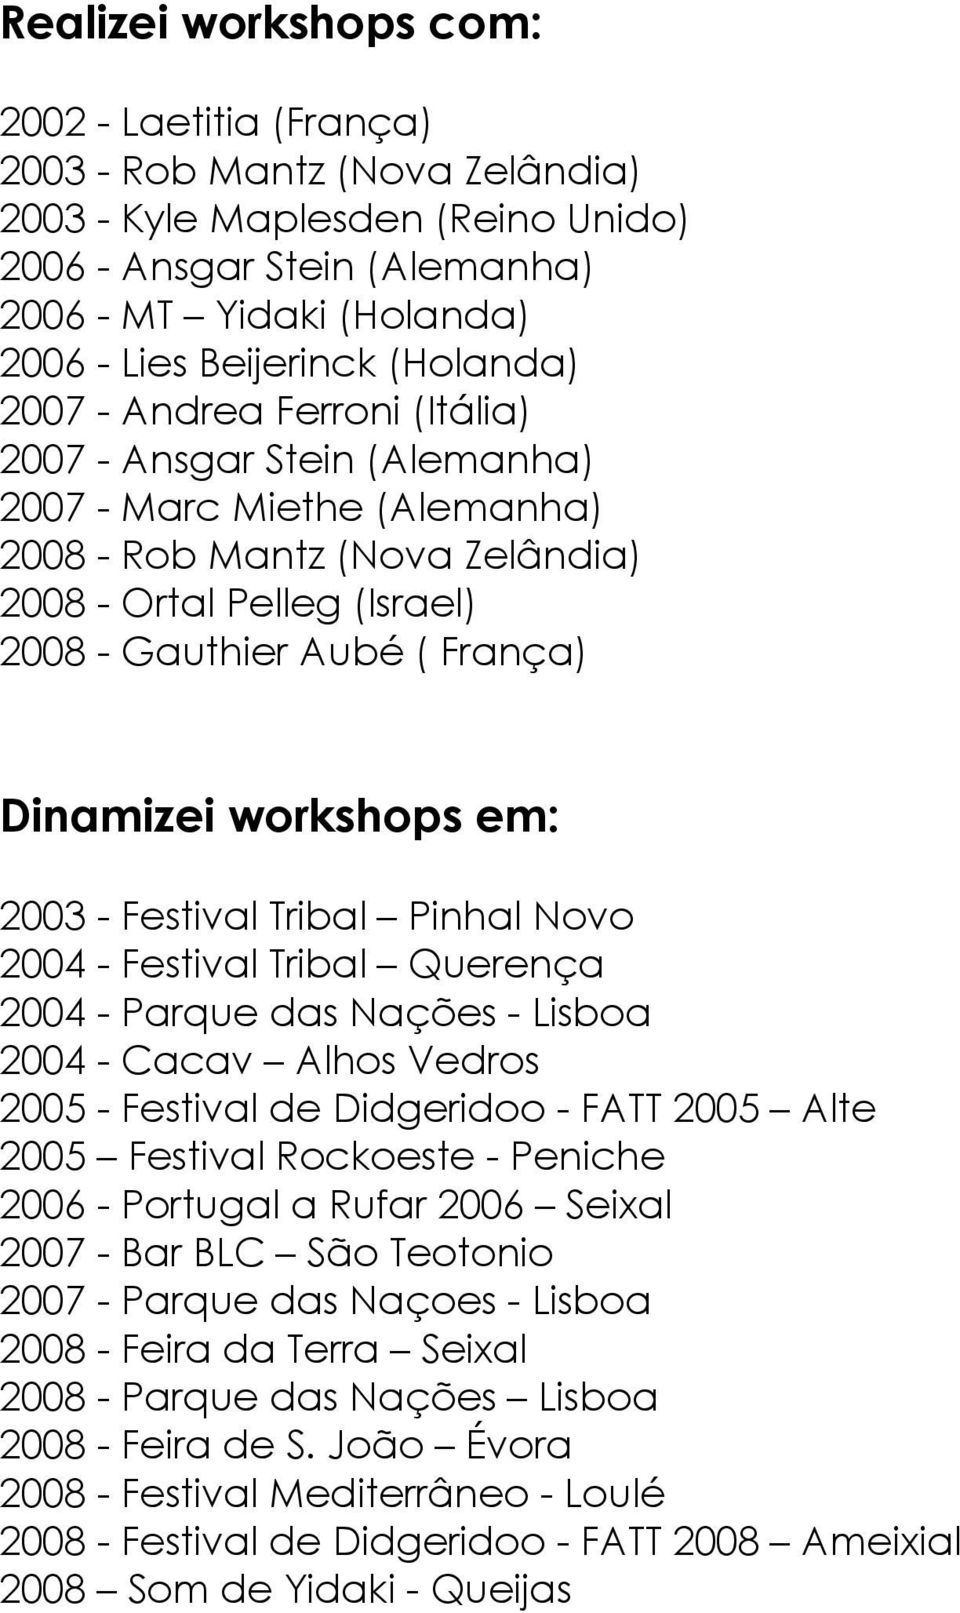 Dinamizei workshops em: 2003 - Festival Tribal Pinhal Novo 2004 - Festival Tribal Querença 2004 - Parque das Nações - Lisboa 2004 - Cacav Alhos Vedros 2005 - Festival de Didgeridoo - FATT 2005 Alte